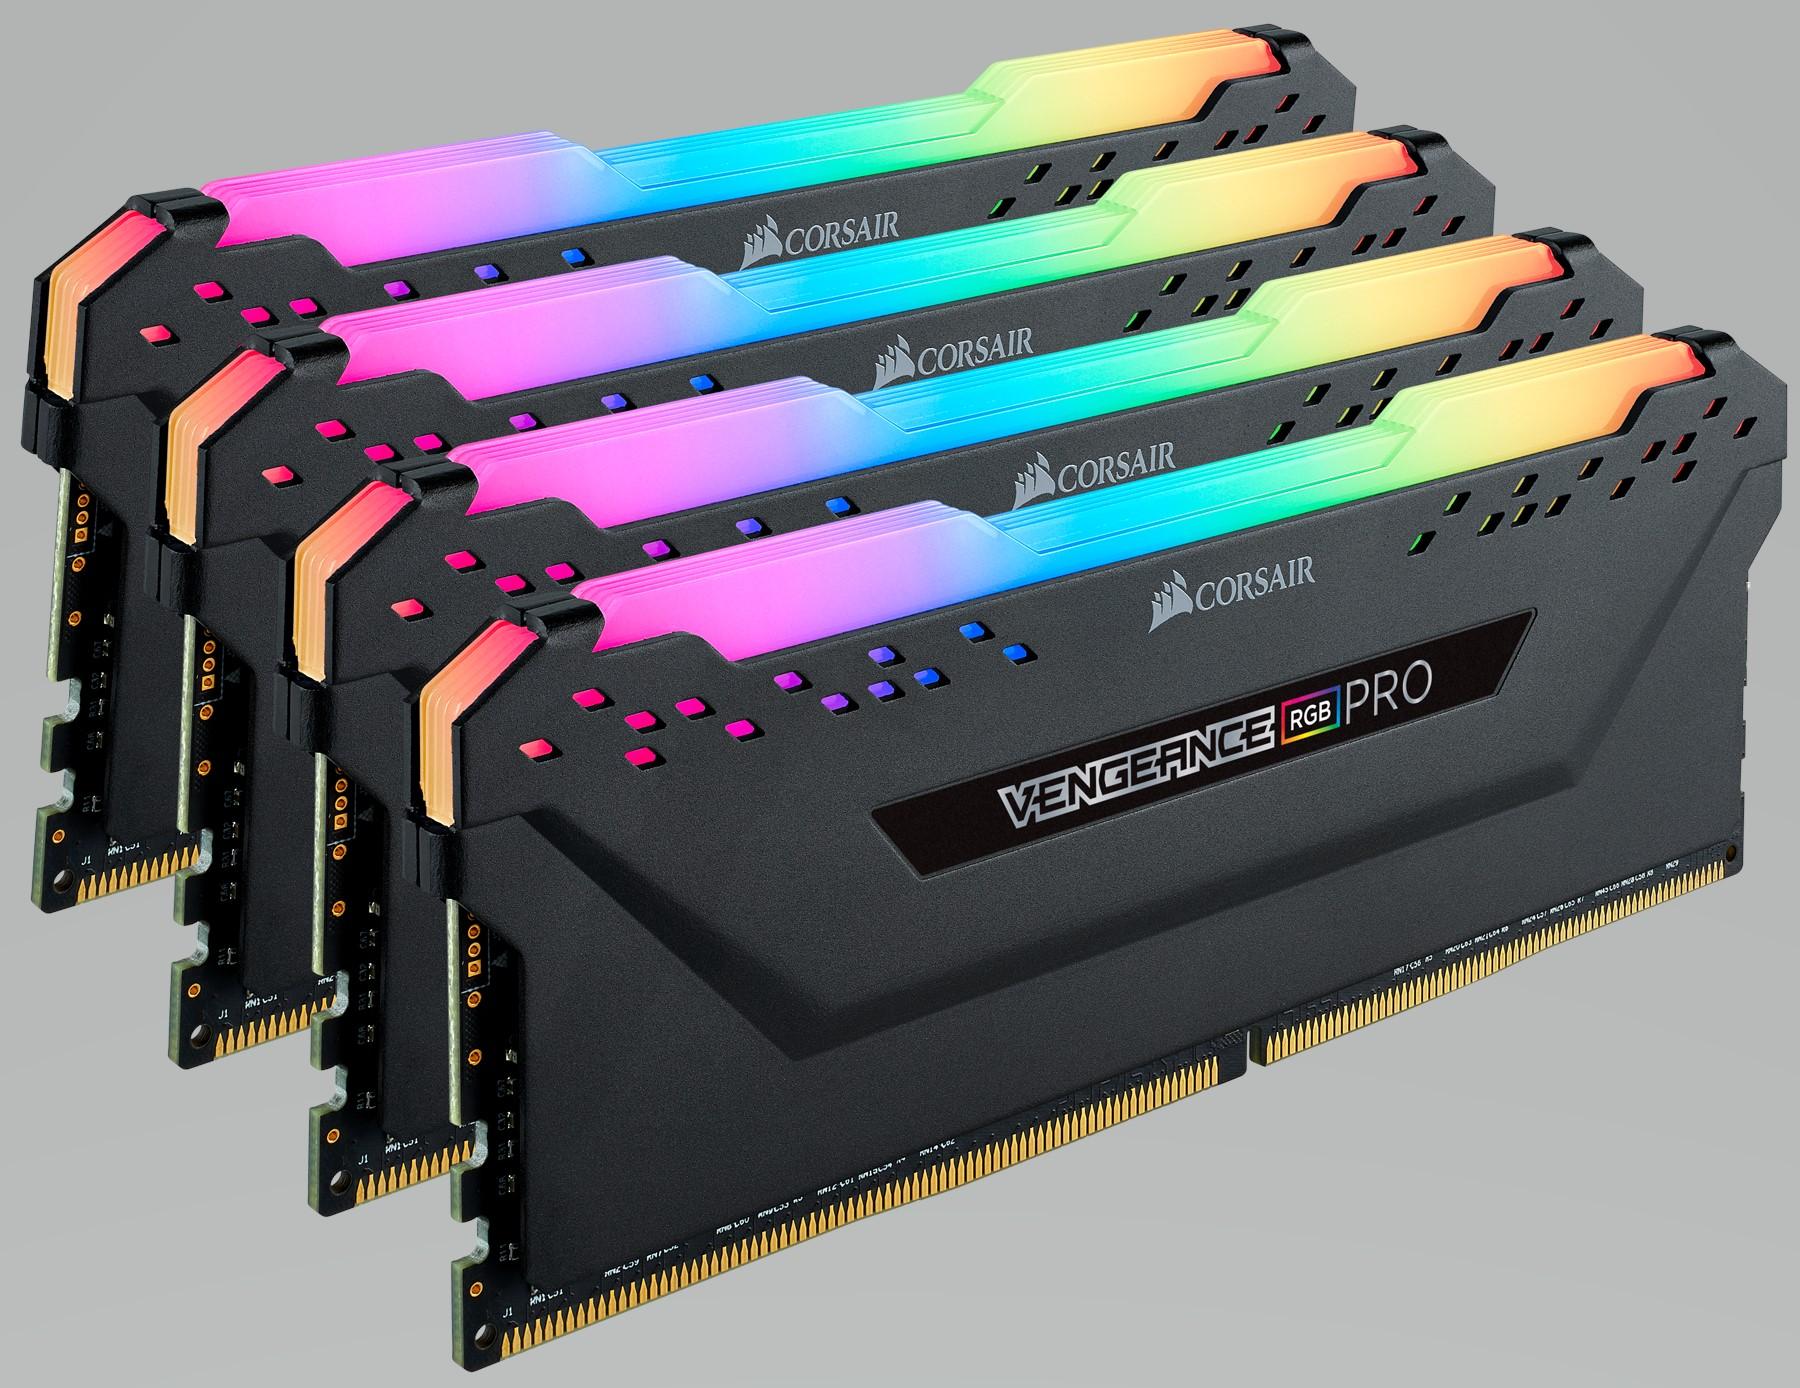 MEMORIA DDR4 CORSAIR VENG. RGB PRO 32GB 2600 4x8 CMW32GX4M4A2666C16 - CMW32GX4M4A2666C16